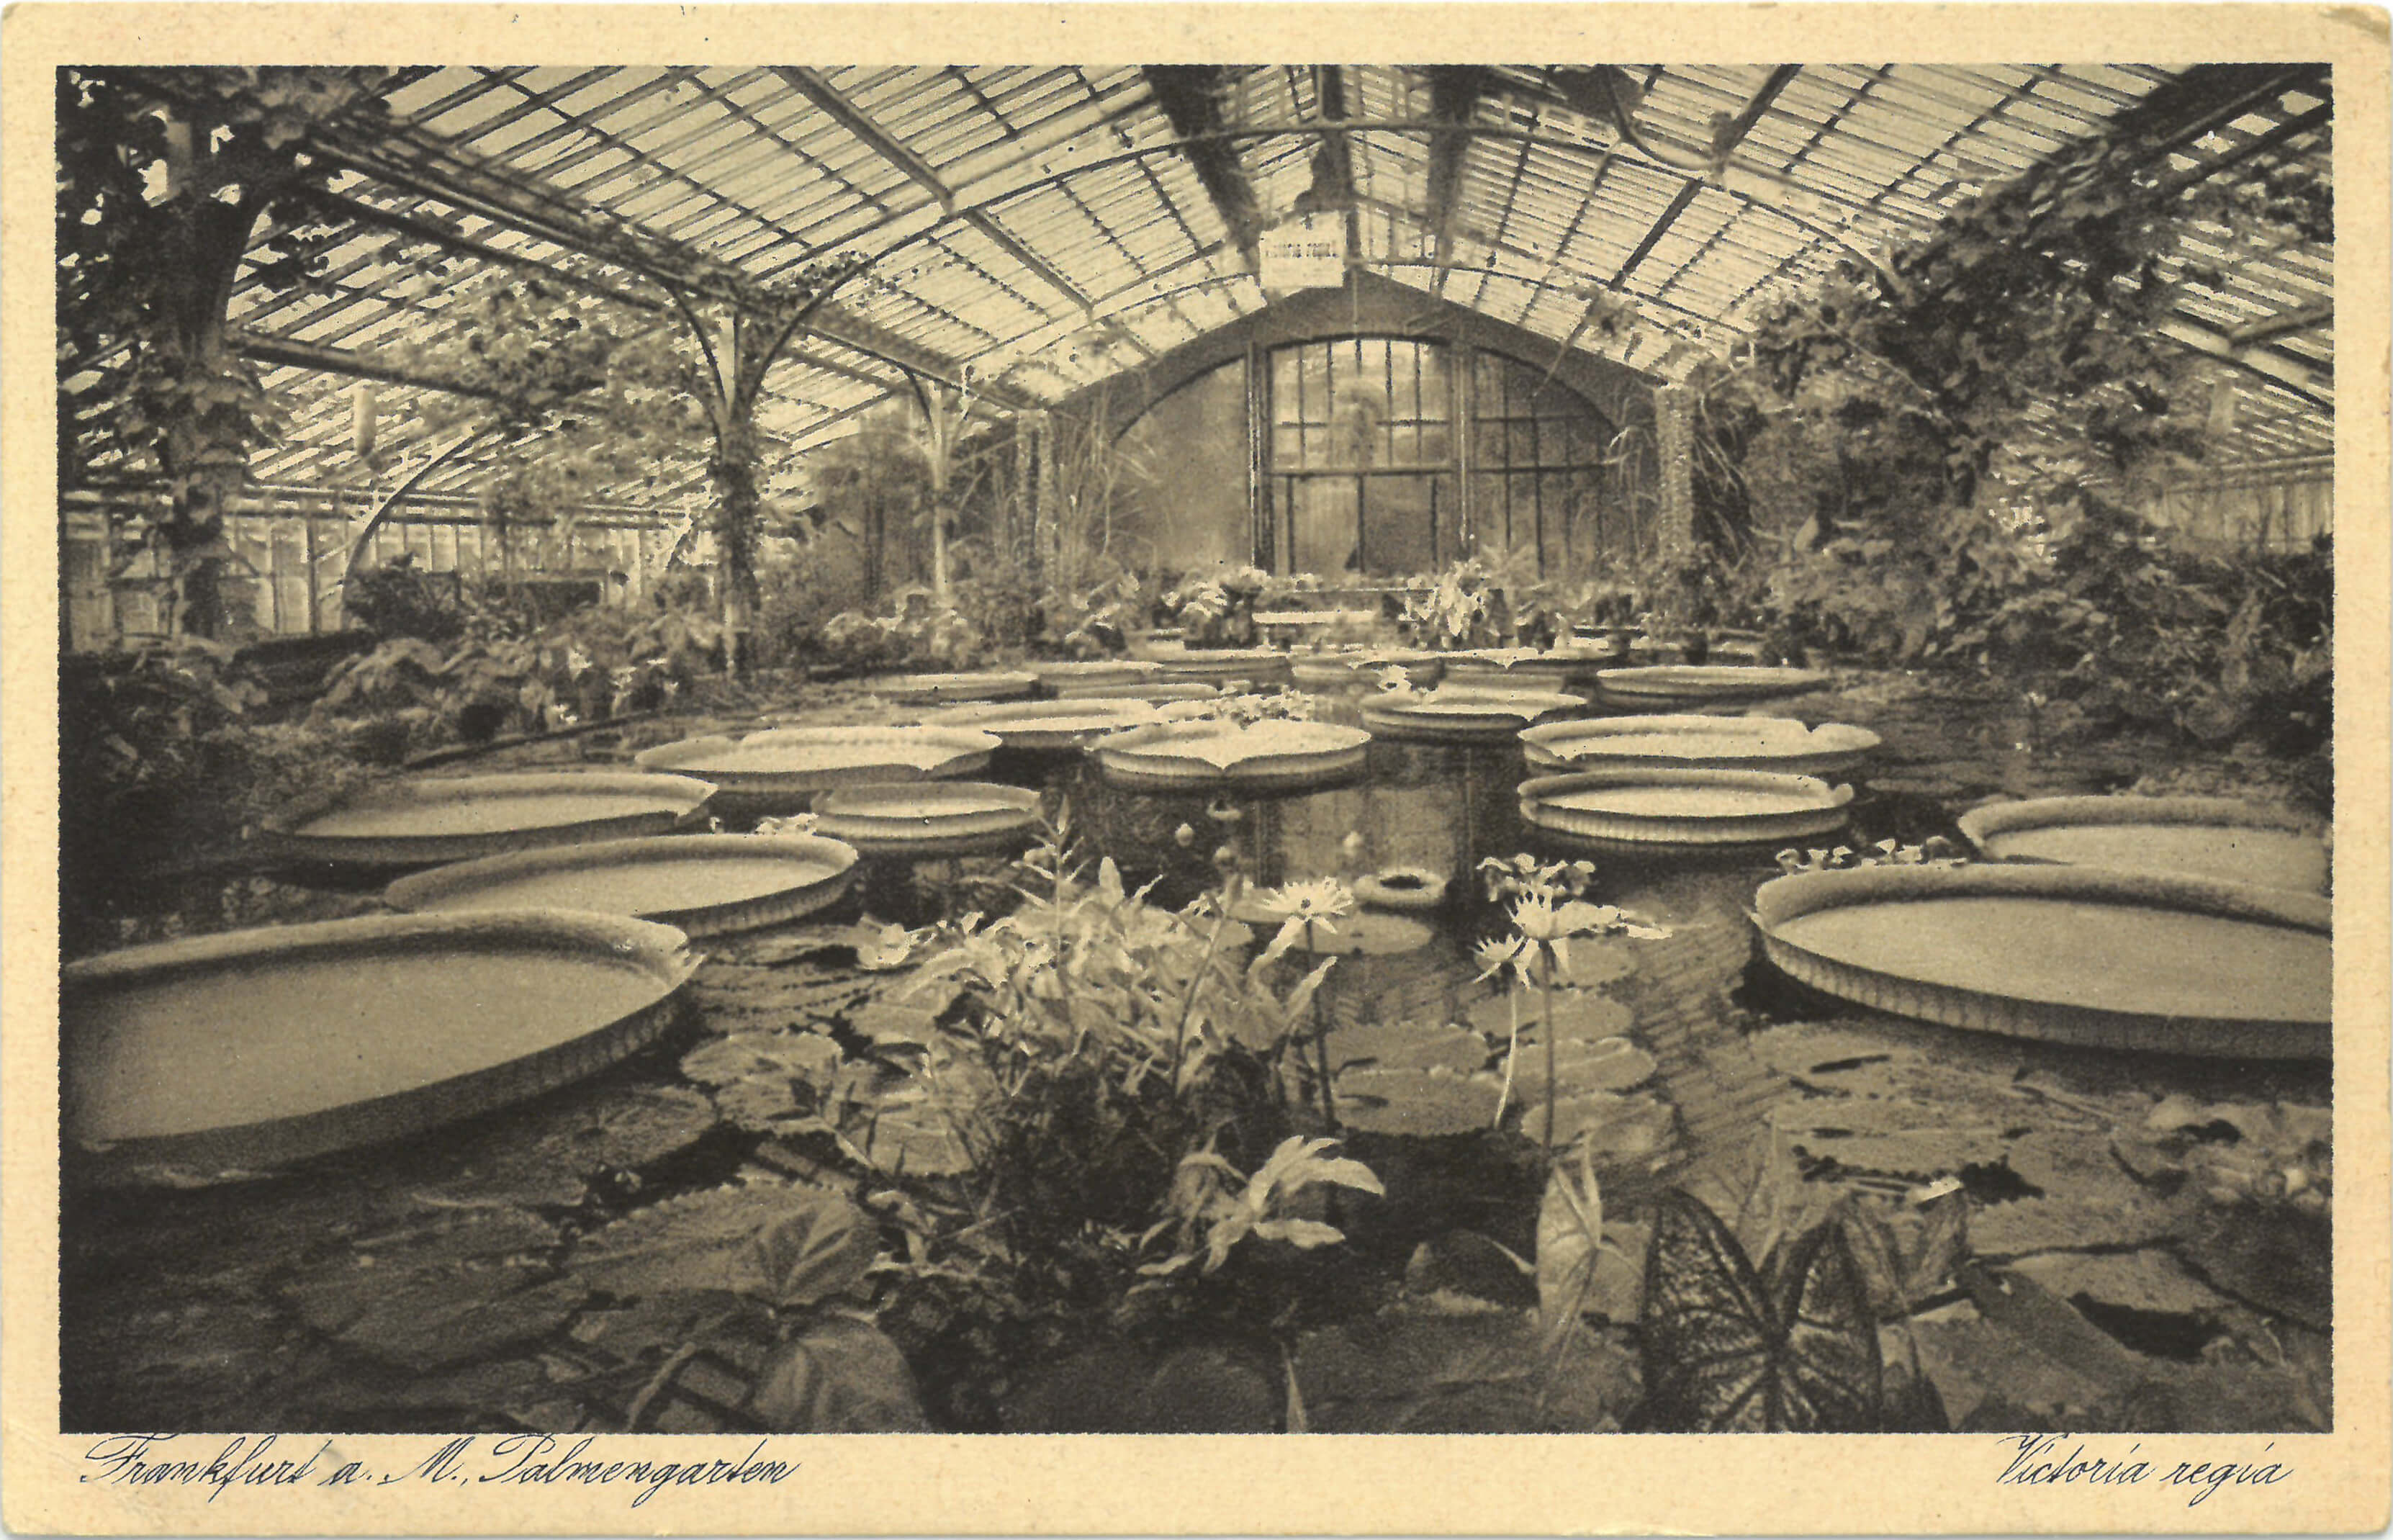 Ein Postkartenmotiv, auf dem ein Gewächshaus zu sehen ist. In dem Gewächshaus ist ein Teich, auf welchem verschiedene Wasserpflanzen und große, tellerartige Seerosenblätter schwimmen. Die Abbildung ist in schwarz-weiß .